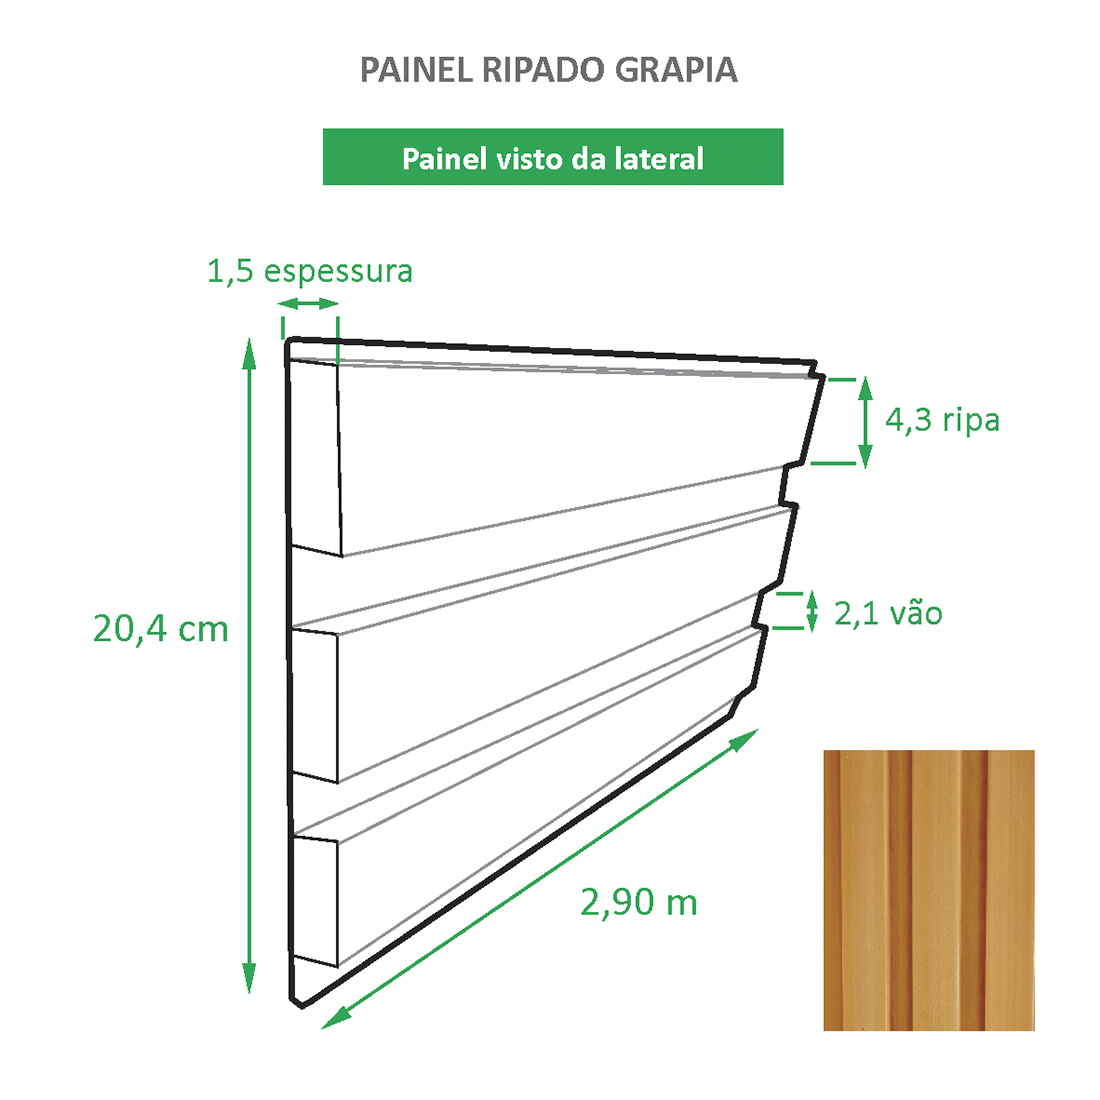 Painel Ripado Ecológico RENO Grapia - Novidade placa com 0,59m²